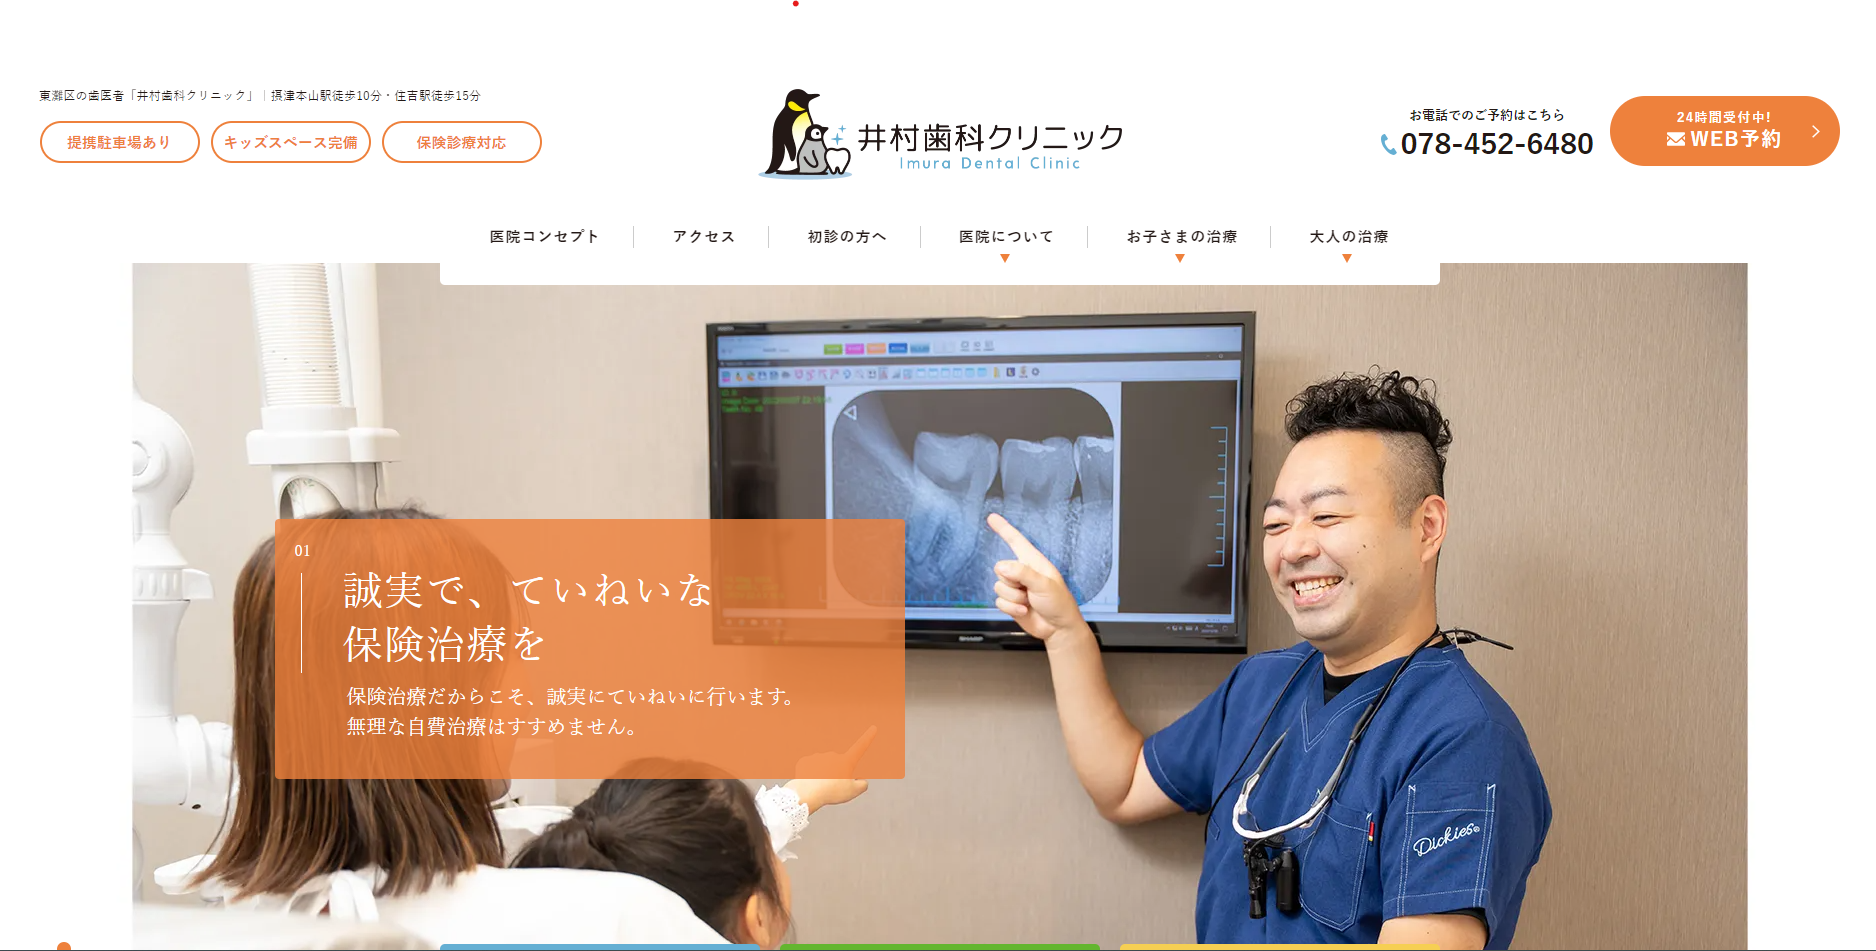 井村歯科クリニックのホームページ